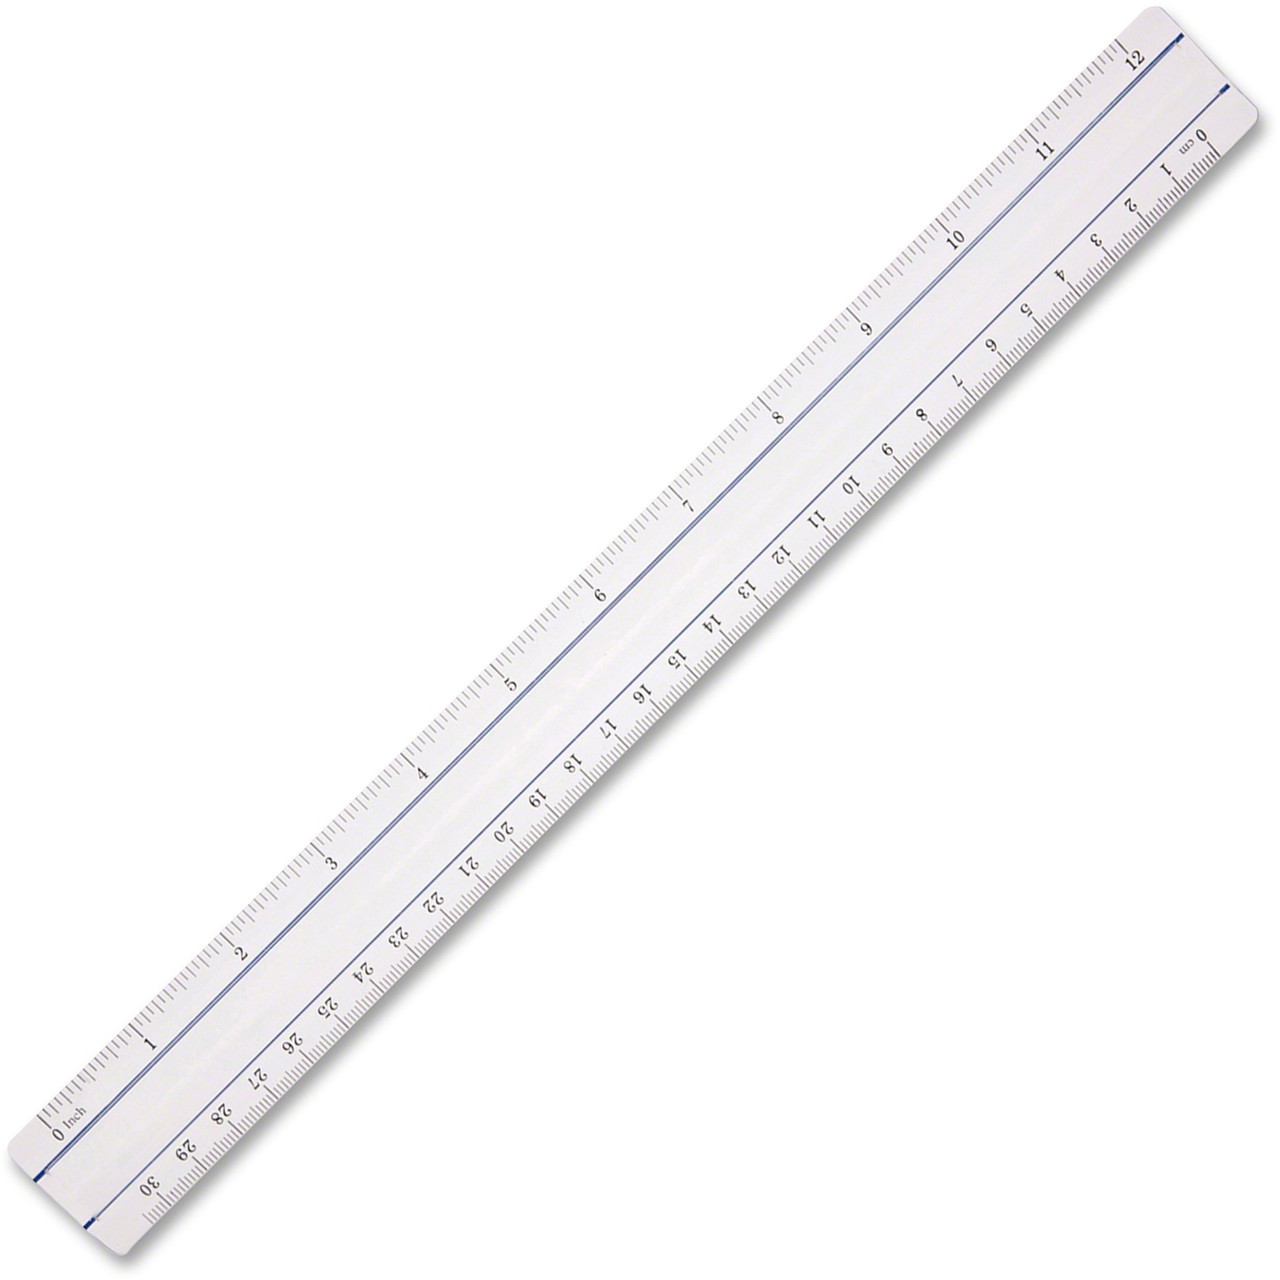 Westcott 45016 Shatter-Resistant Plastic Ruler, 6 Length